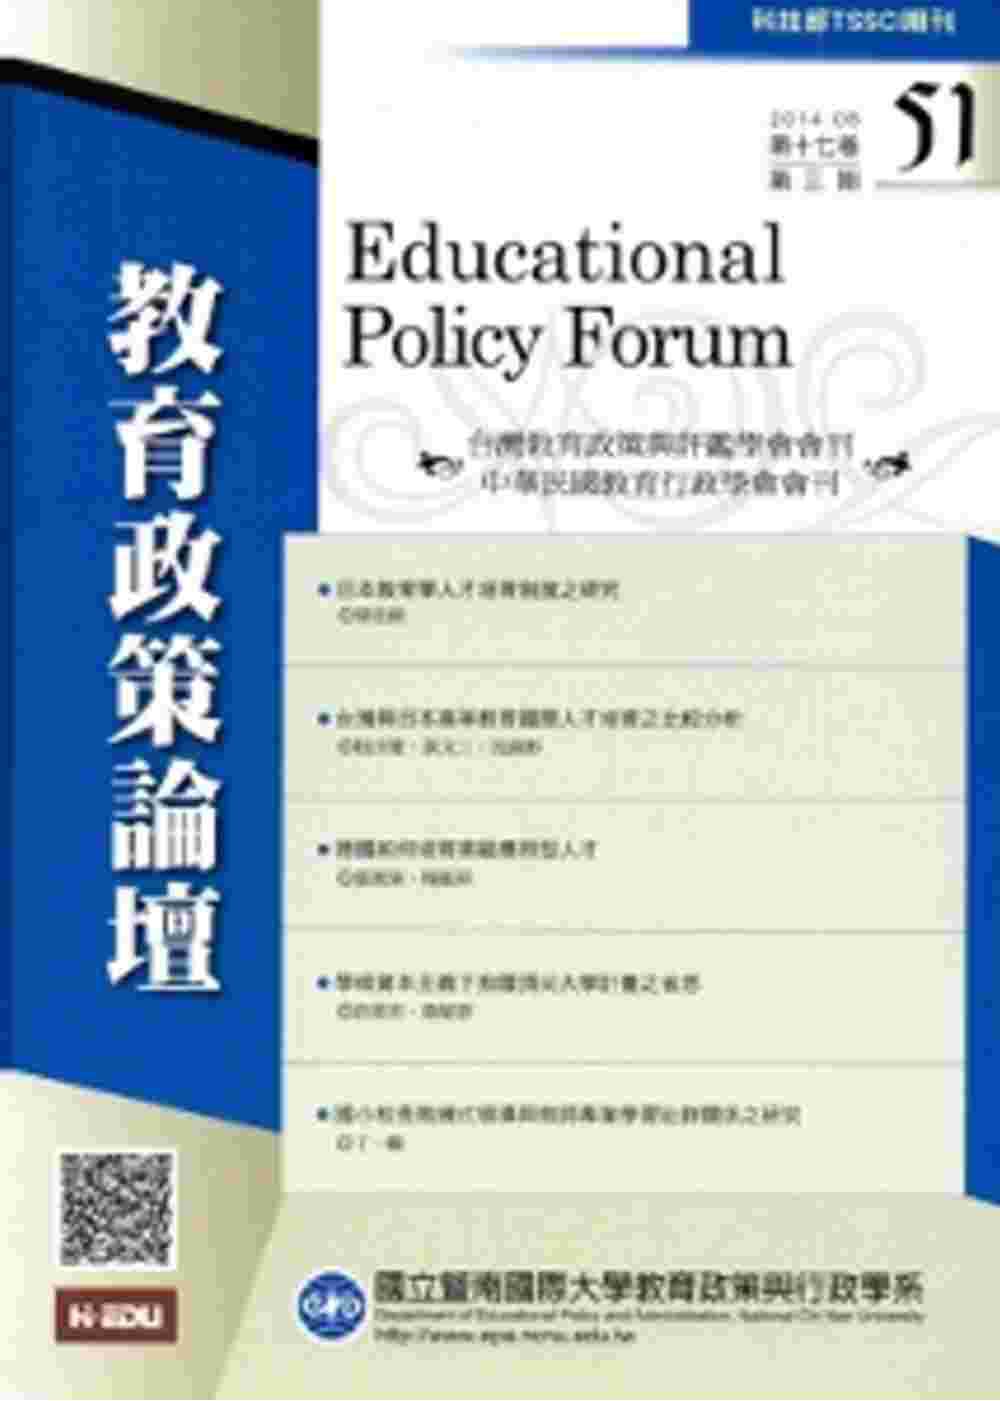 教育政策論壇51(第十七卷第三期)2014/08